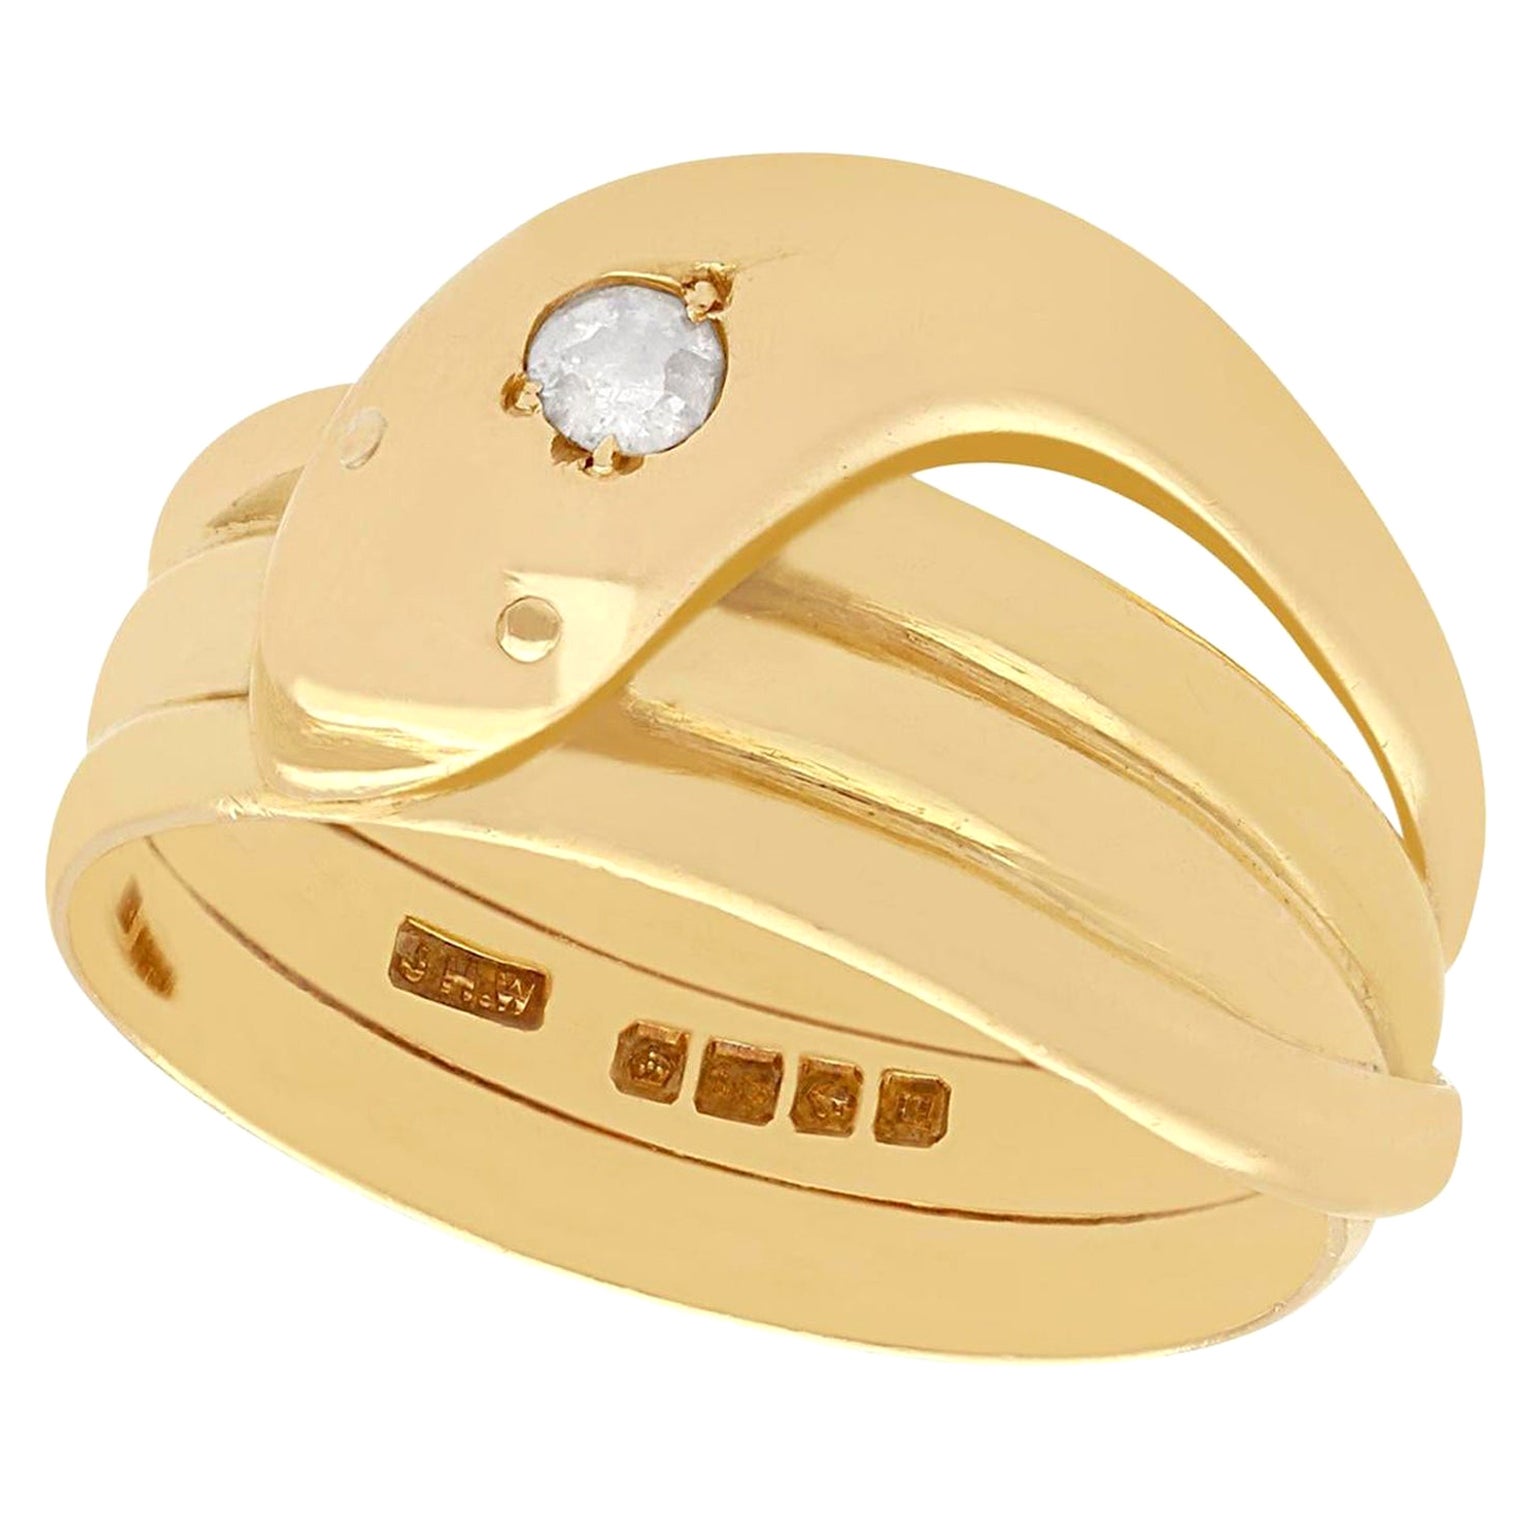 Latest gold ring designs l 2020 में ये सोने की अँगूठी डिजाइन बनवाए और सबकी  तारीफ़ पाए l - YouT… | Handmade gold ring, Beautiful gold rings, Latest  gold ring designs